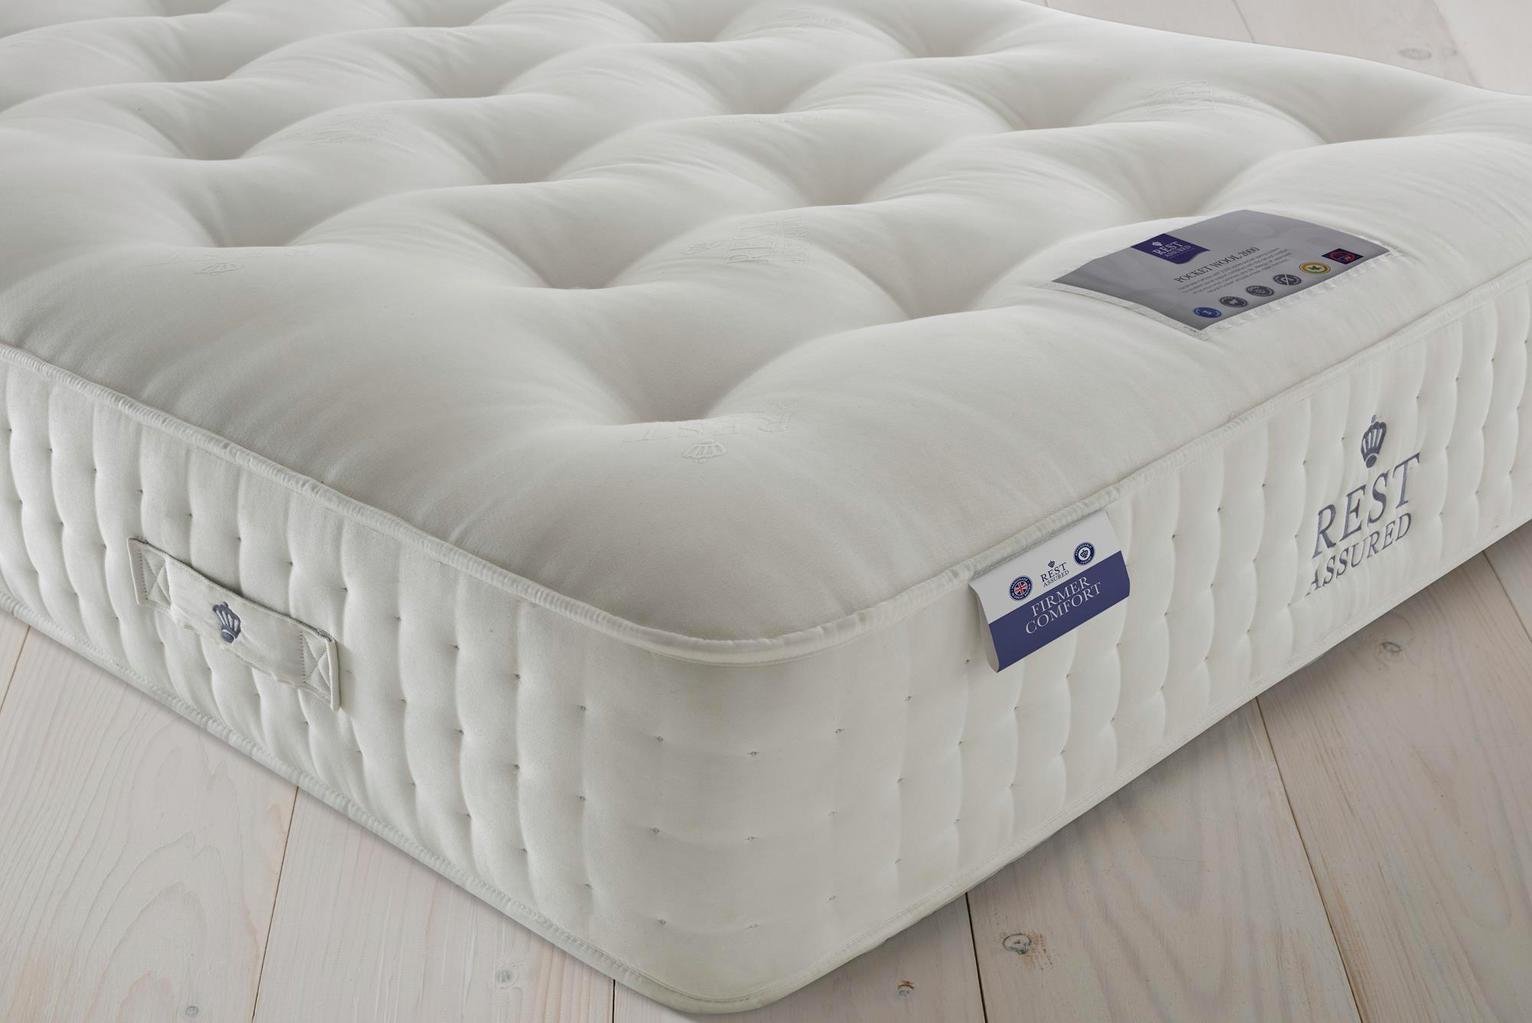 rest assured mattresses reviews